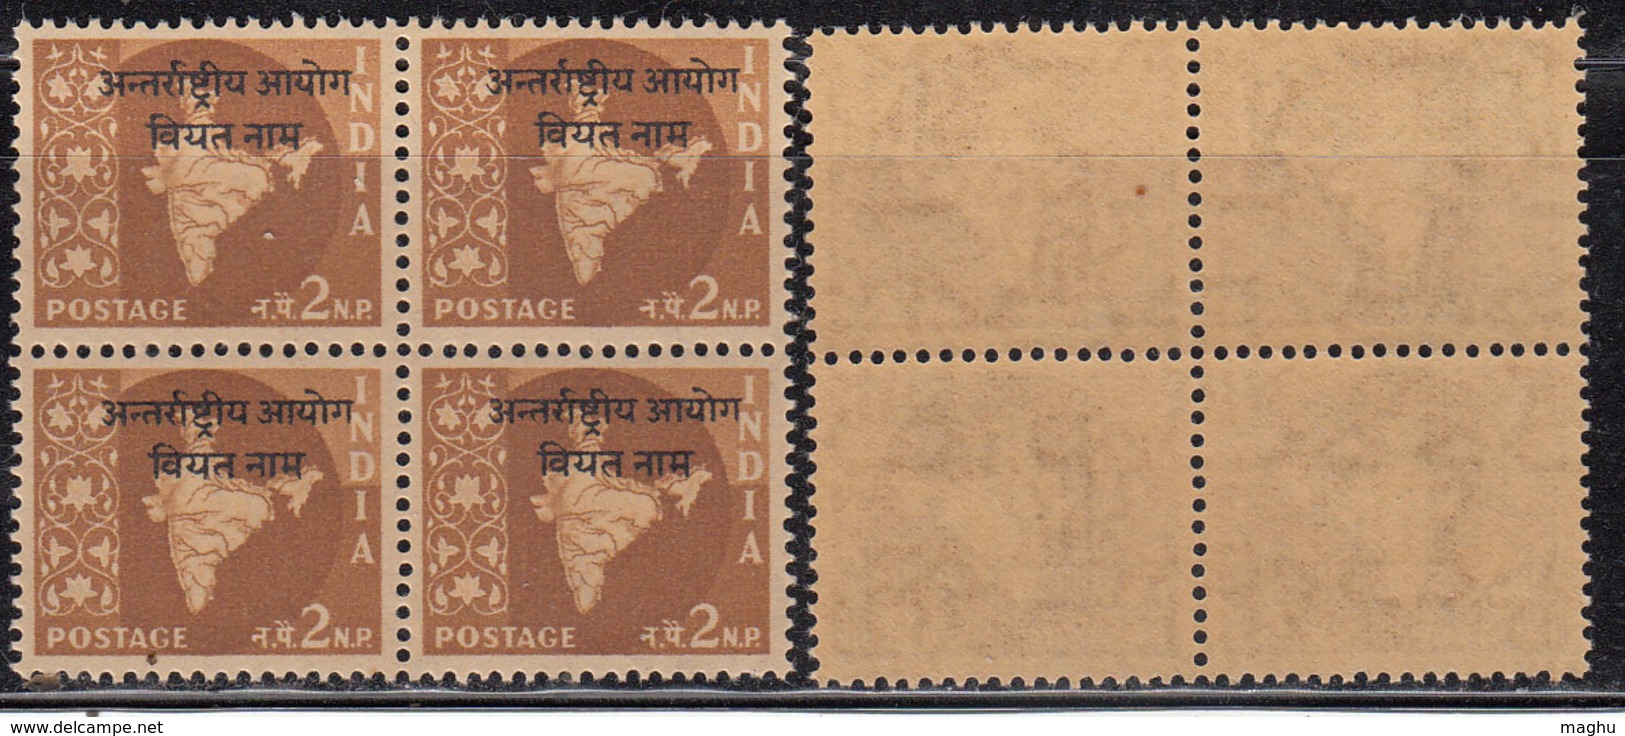 Block Of 4, 2np Ovpt Vietnam On Map Series,  India MNH 1962, Ashokan Watermark, - Militärpostmarken